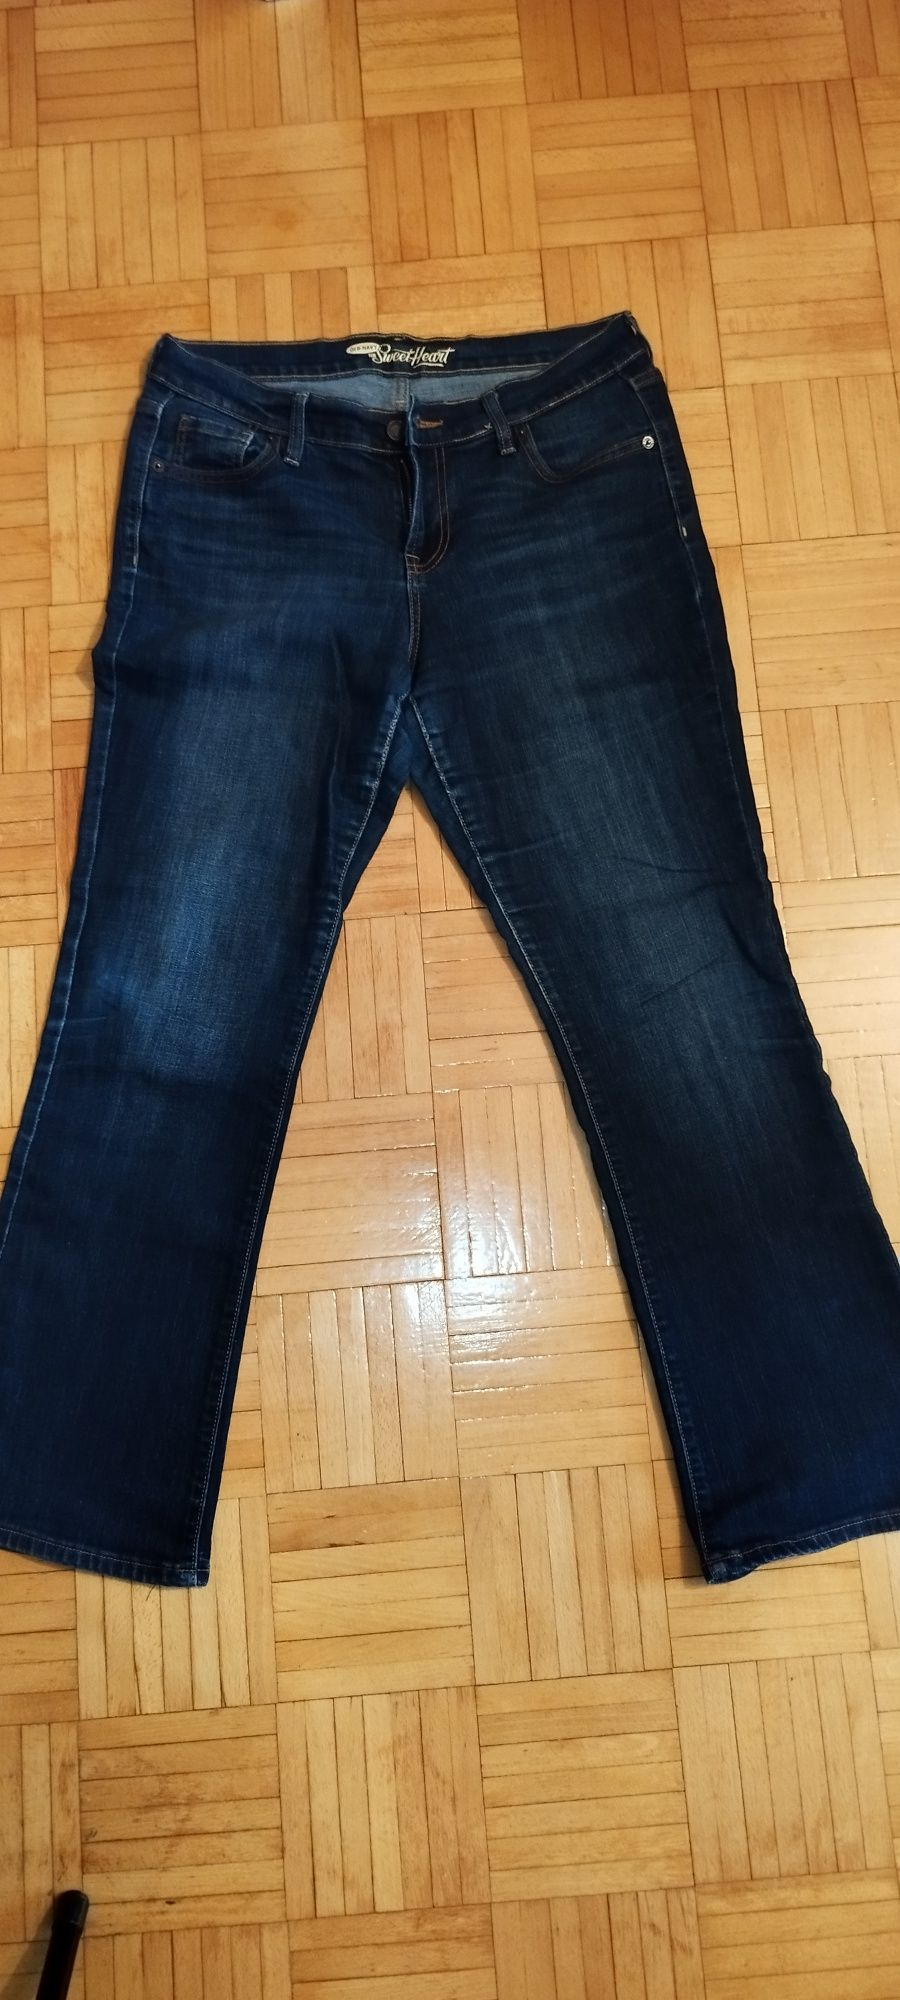 Spodnie dżinsowe, jeans